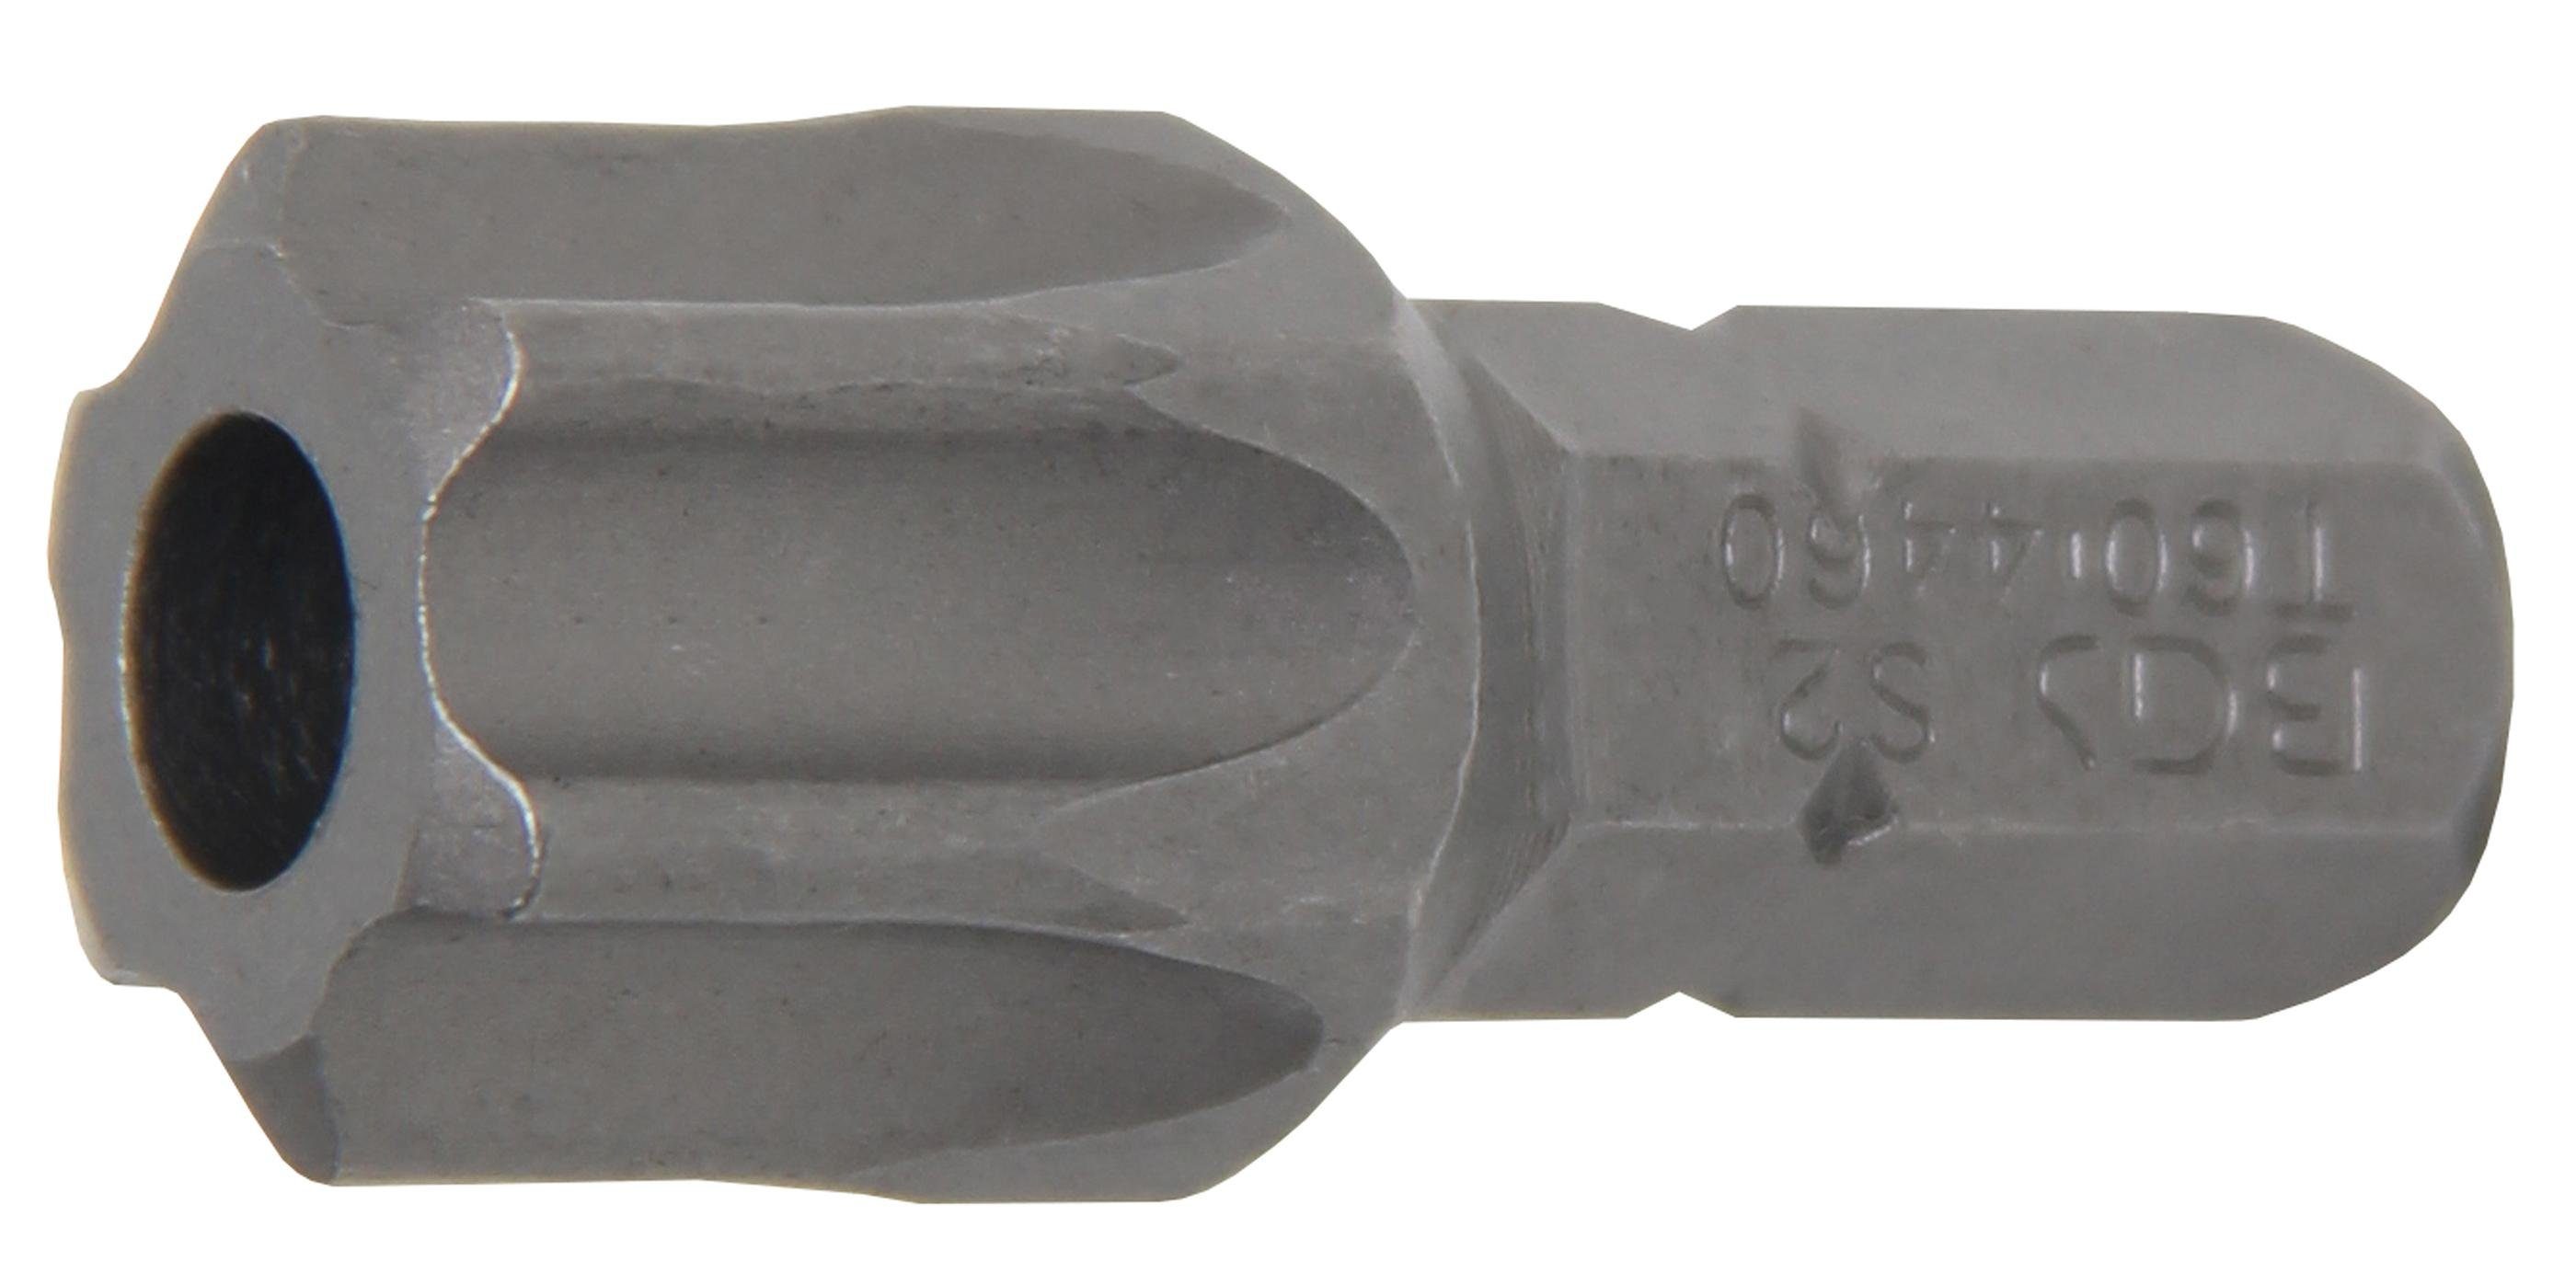 BGS technic Bit-Schraubendreher T60 mit Außensechskant Bohrung Torx) mm, (für T-Profil Länge (5/16), mm Bit, 30 Antrieb 8